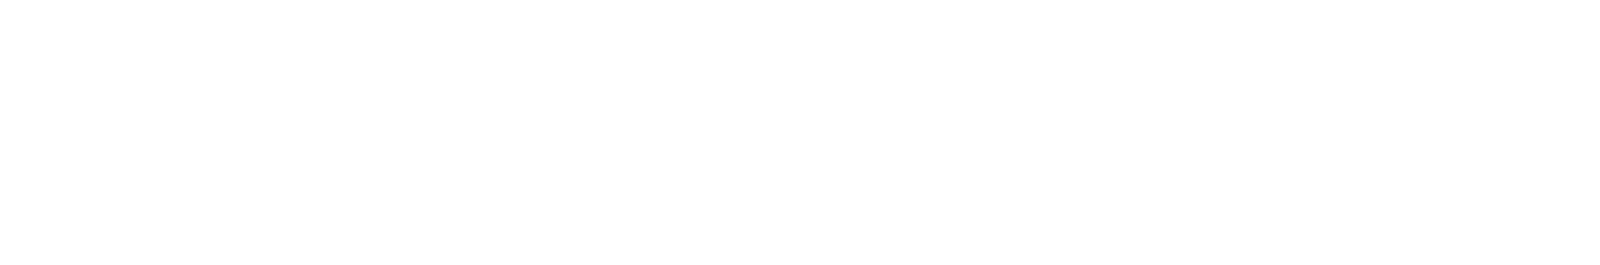 JB Hi-Fi
 logo large for dark backgrounds (transparent PNG)